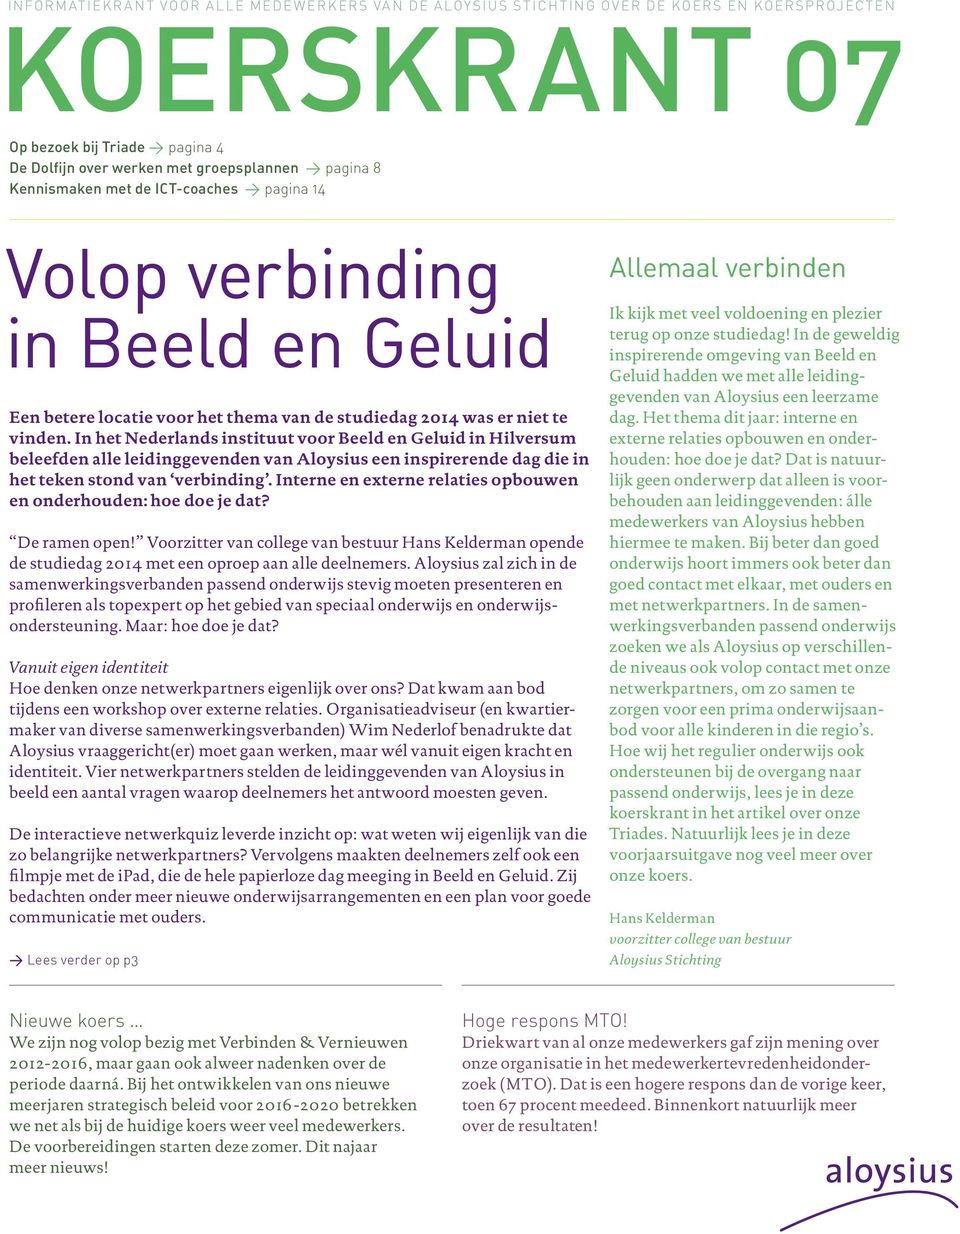 In het Nederlands instituut voor Beeld en Geluid in Hilversum beleefden alle leidinggevenden van Aloysius een inspirerende dag die in het teken stond van verbinding.